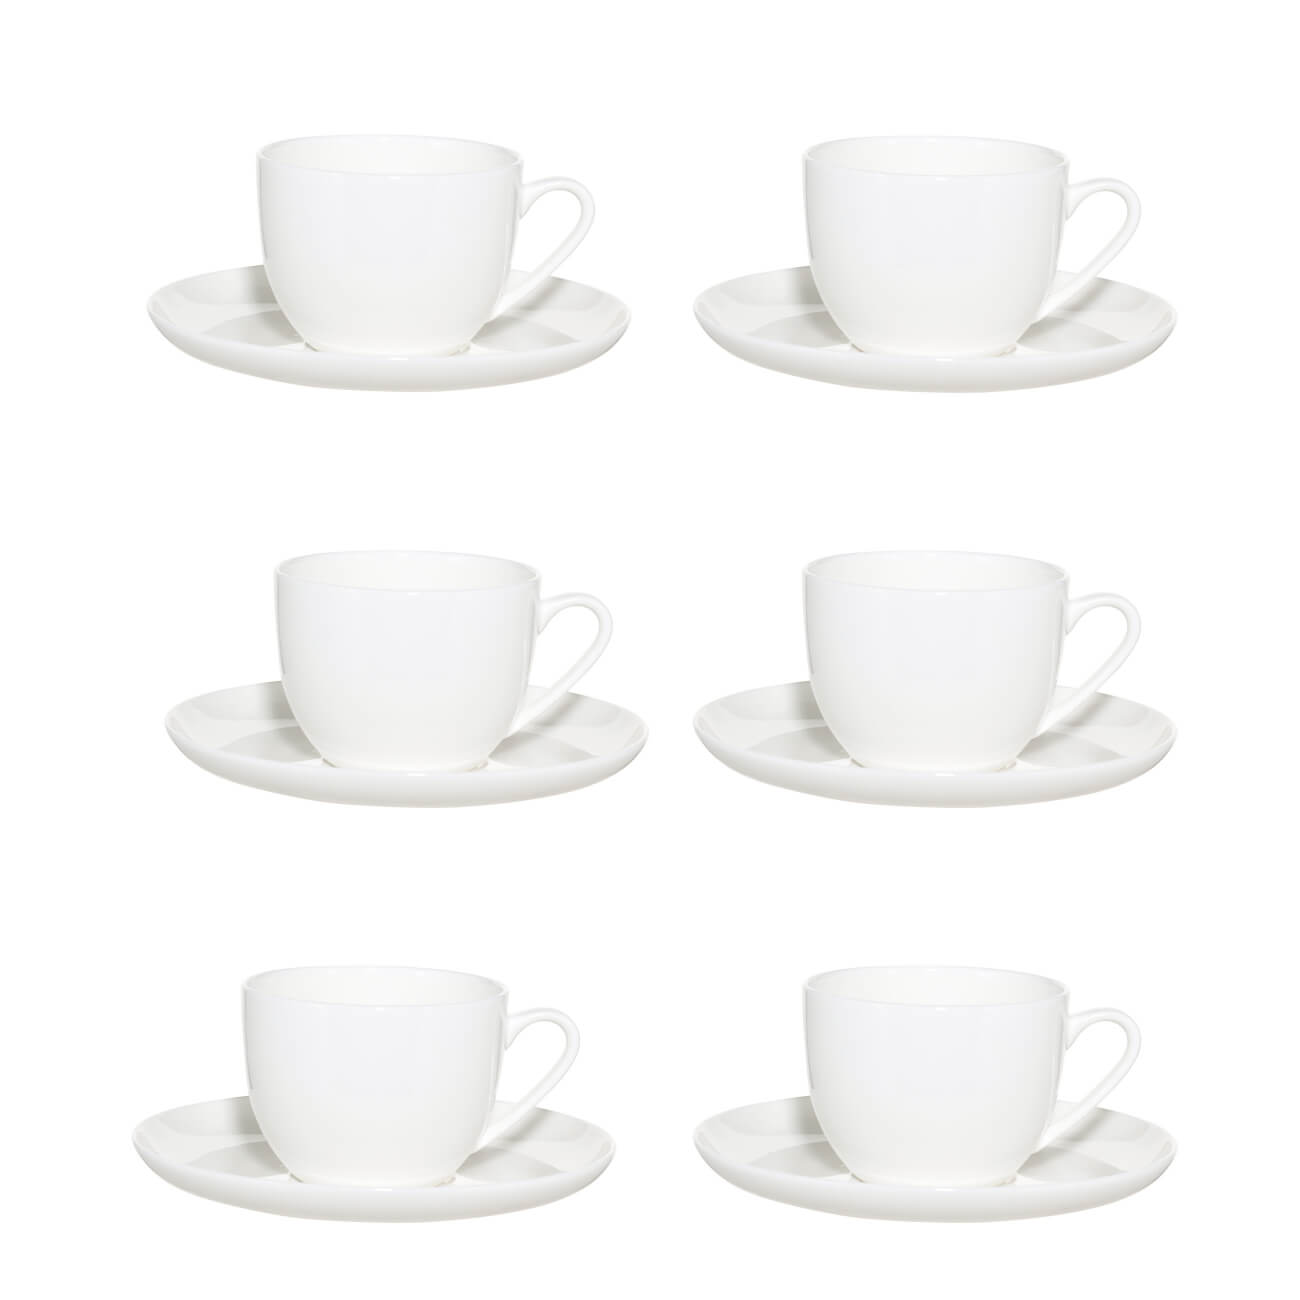 Пара чайная, 6 перс, 12 пр, 250 мл, фарфор F, белая, Ideal white пара чайная 4 перс 8 пр 180 мл фарфор f дыхание лета